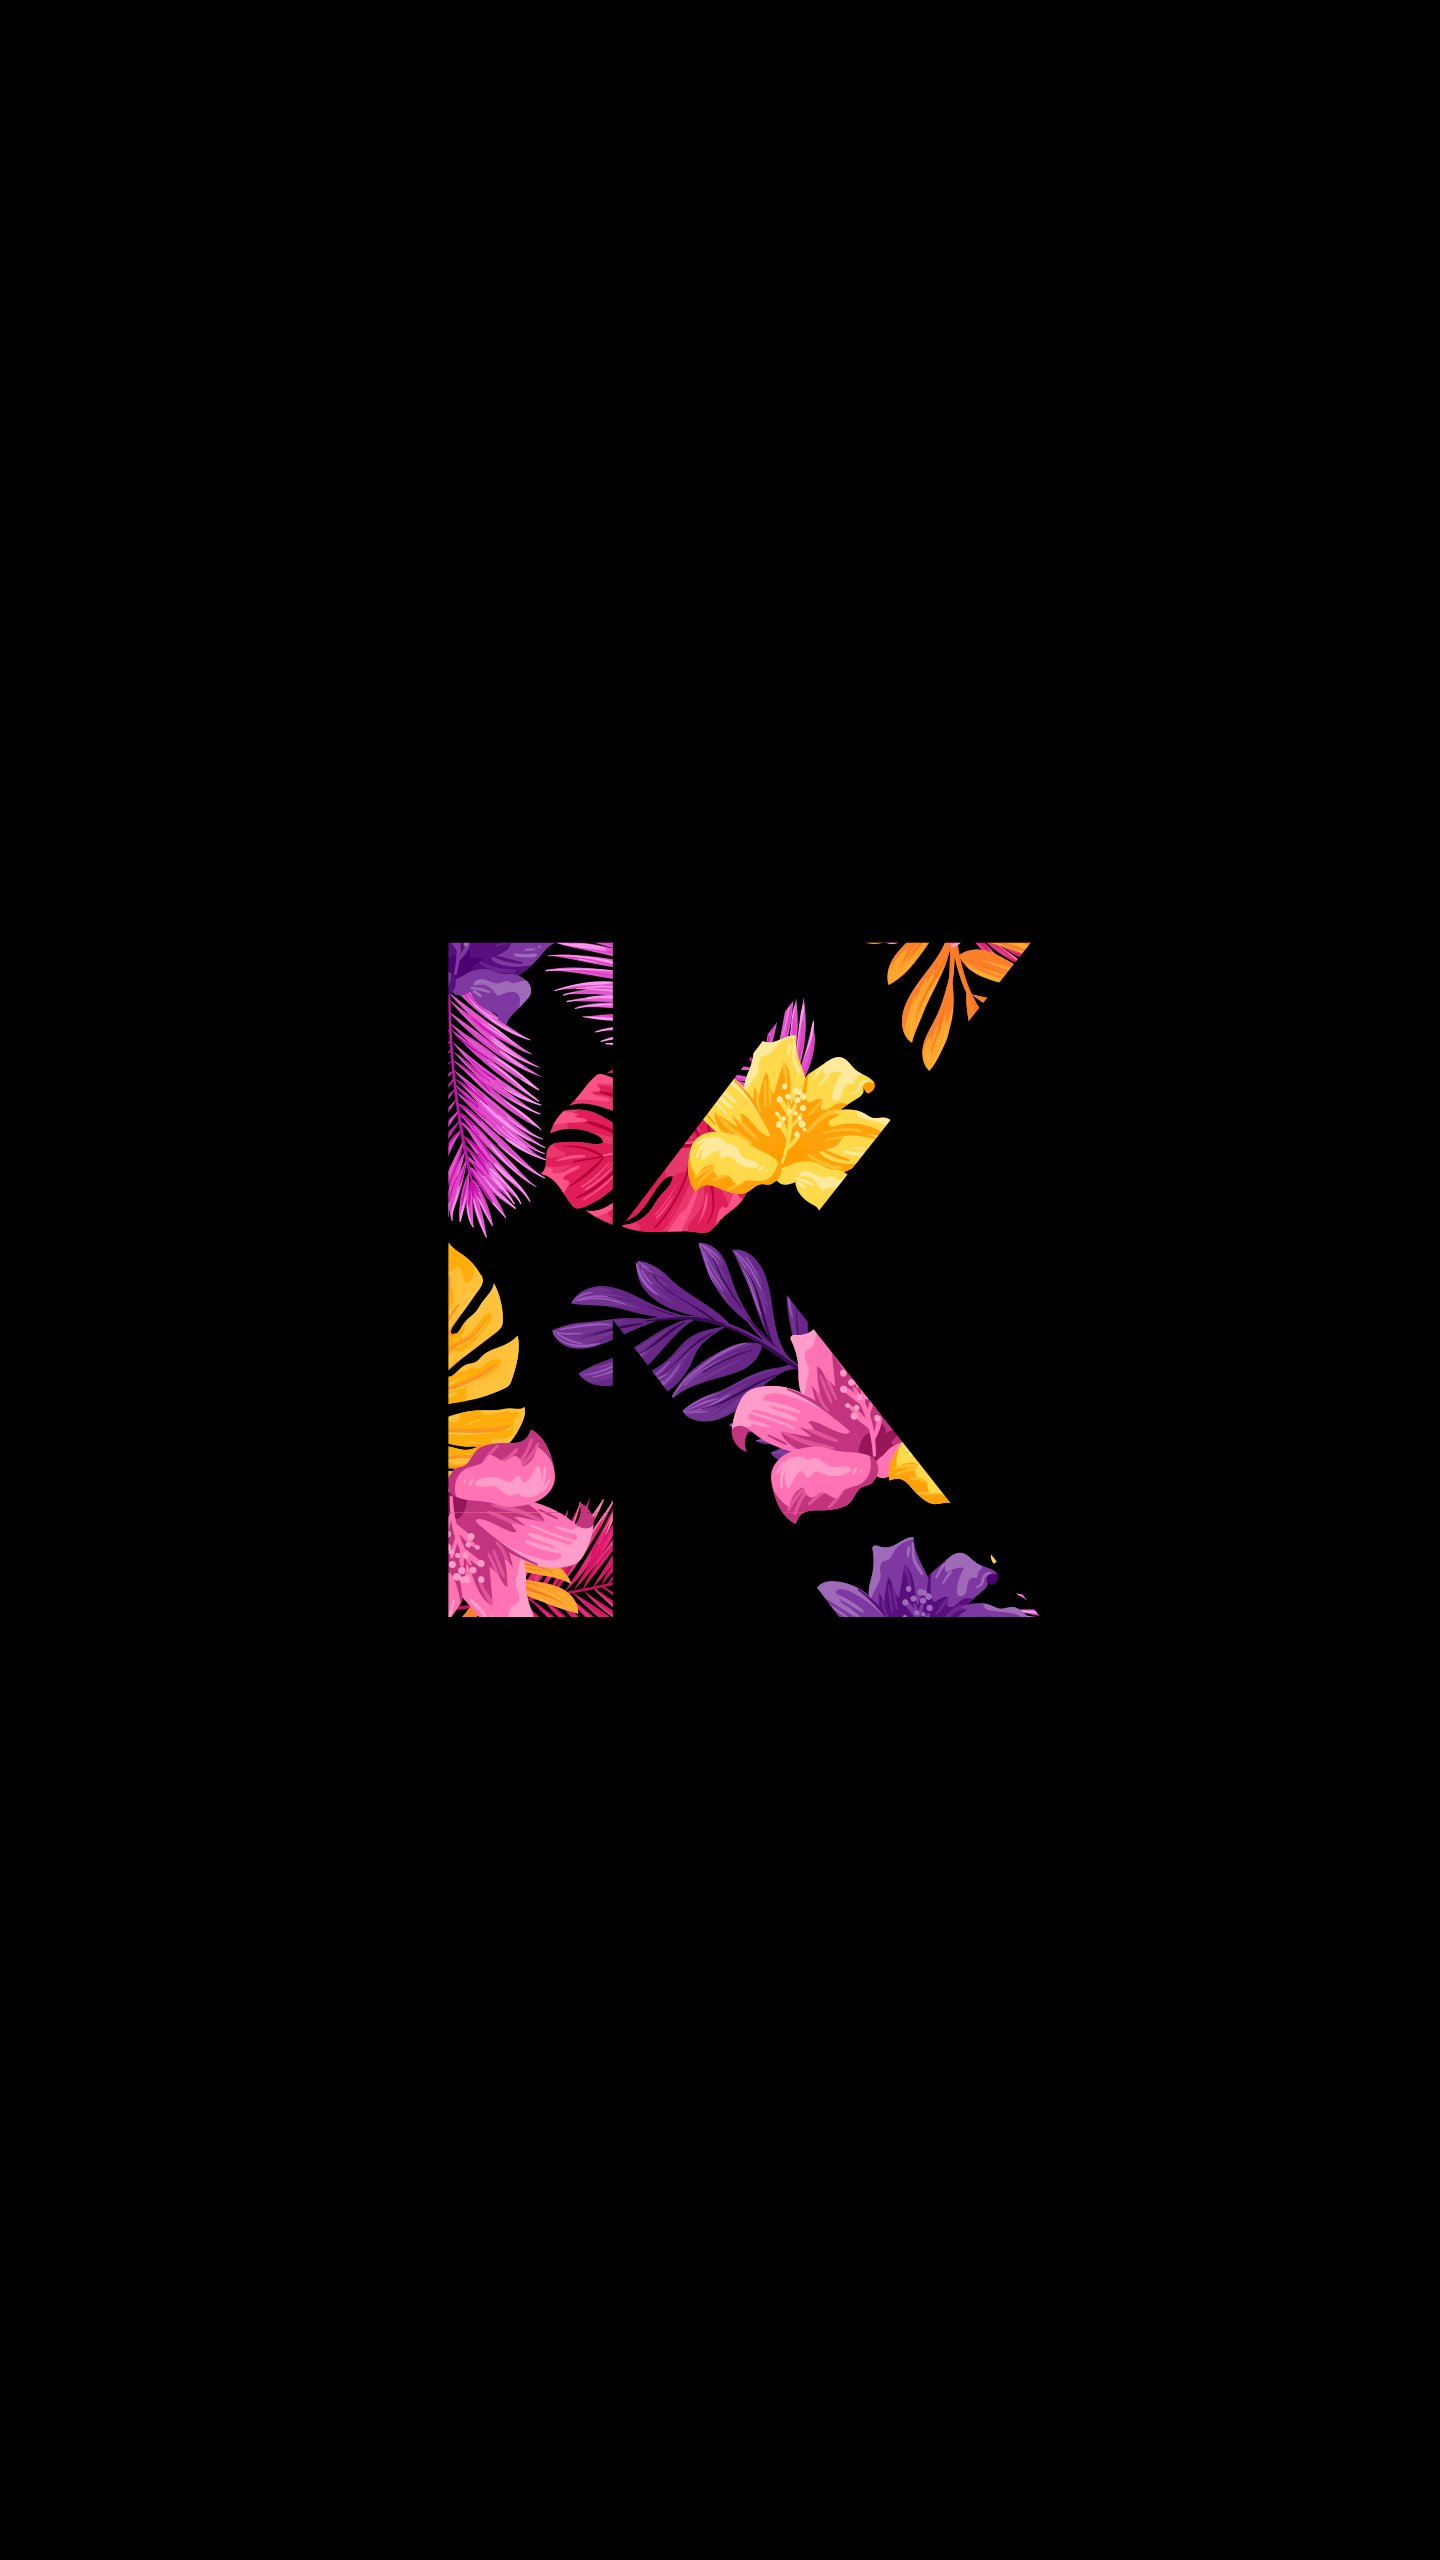 K letter HD wallpapers  Pxfuel